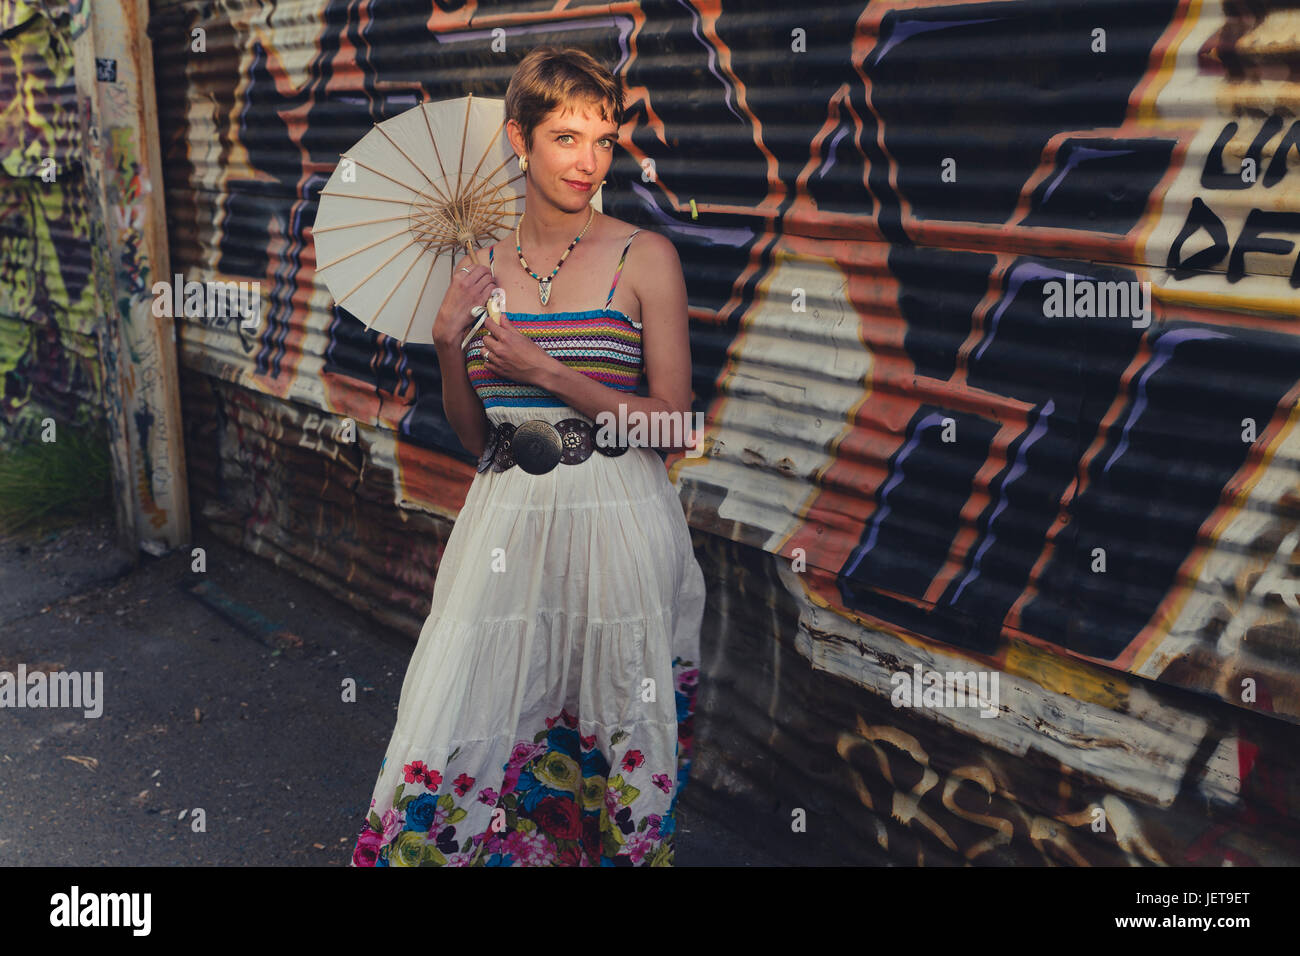 Une jeune femme de race blanche avec des caractéristiques androgynes porte des vêtements décontractés dans un milieu urbain Banque D'Images